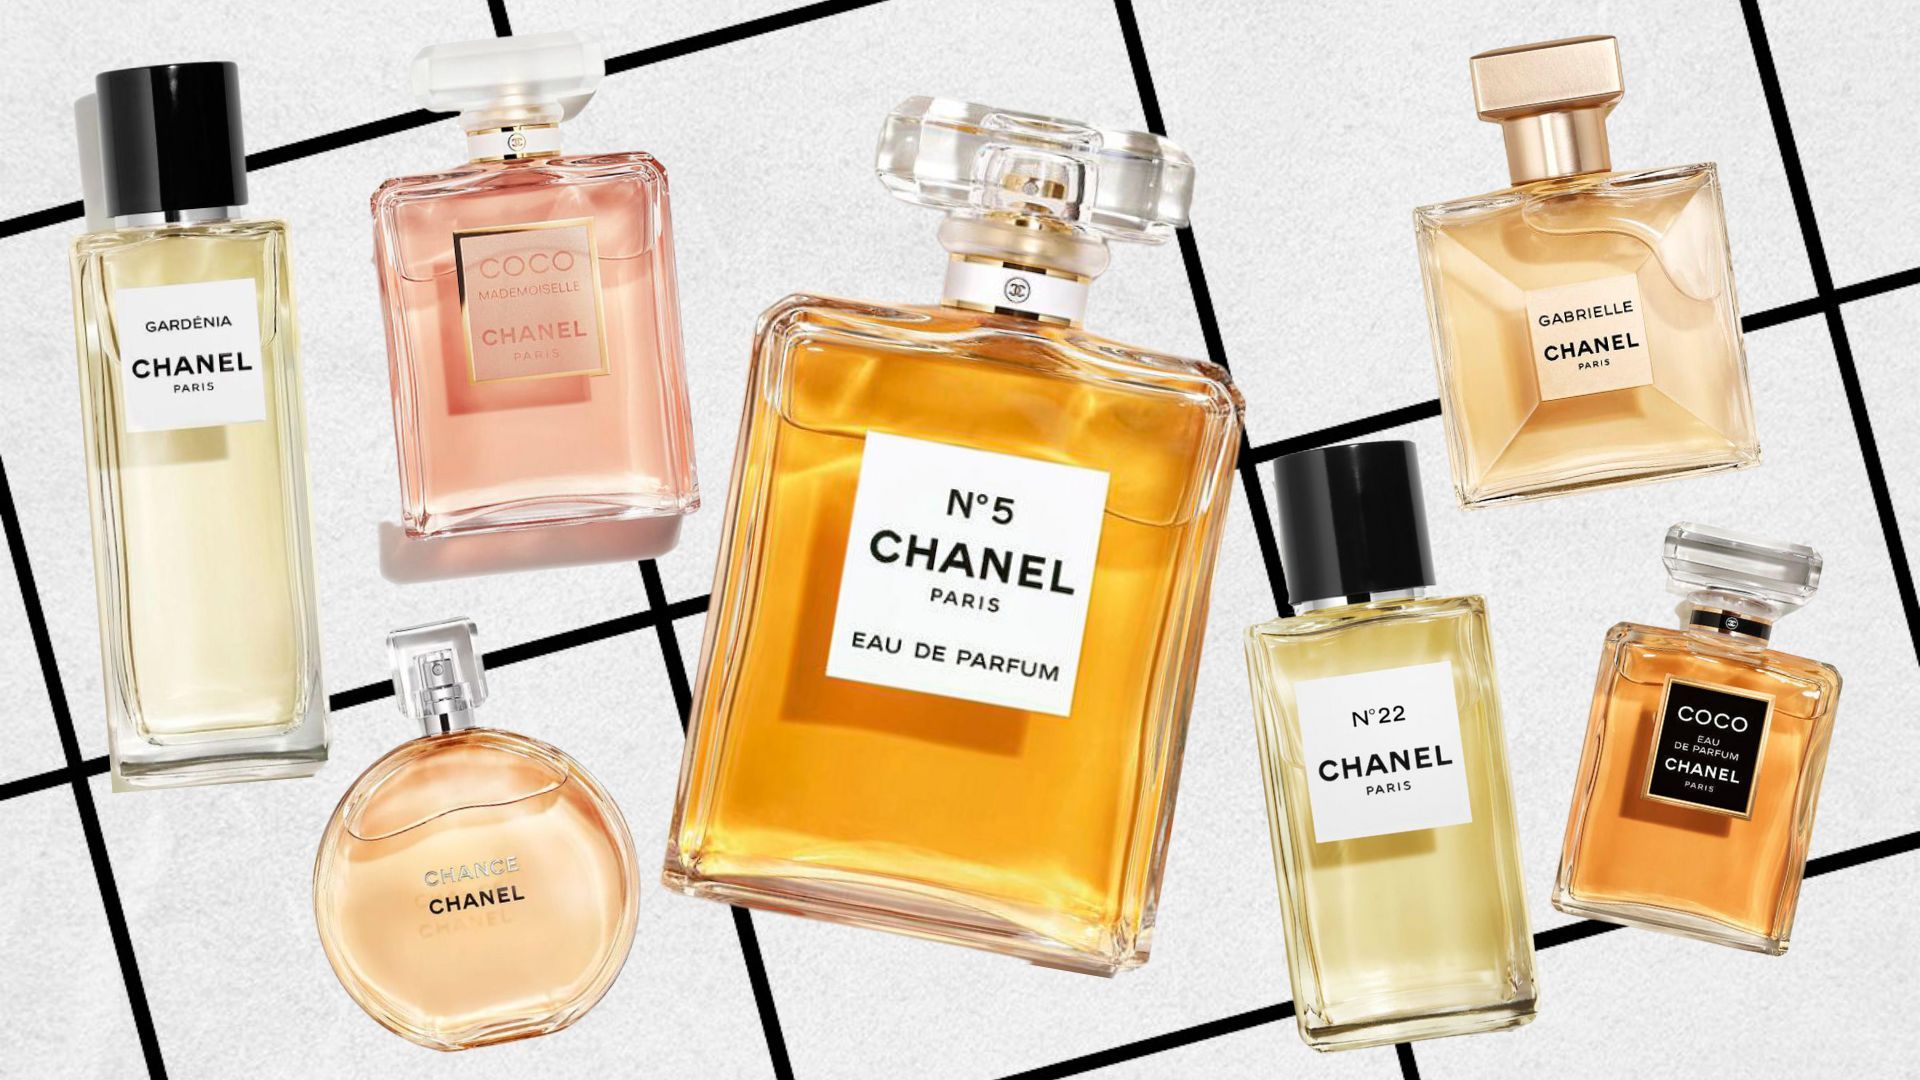 https://images.hellomagazine.com/horizon/landscape/81ebfce02ed4-most-iconic-chanel-perfumes.jpg